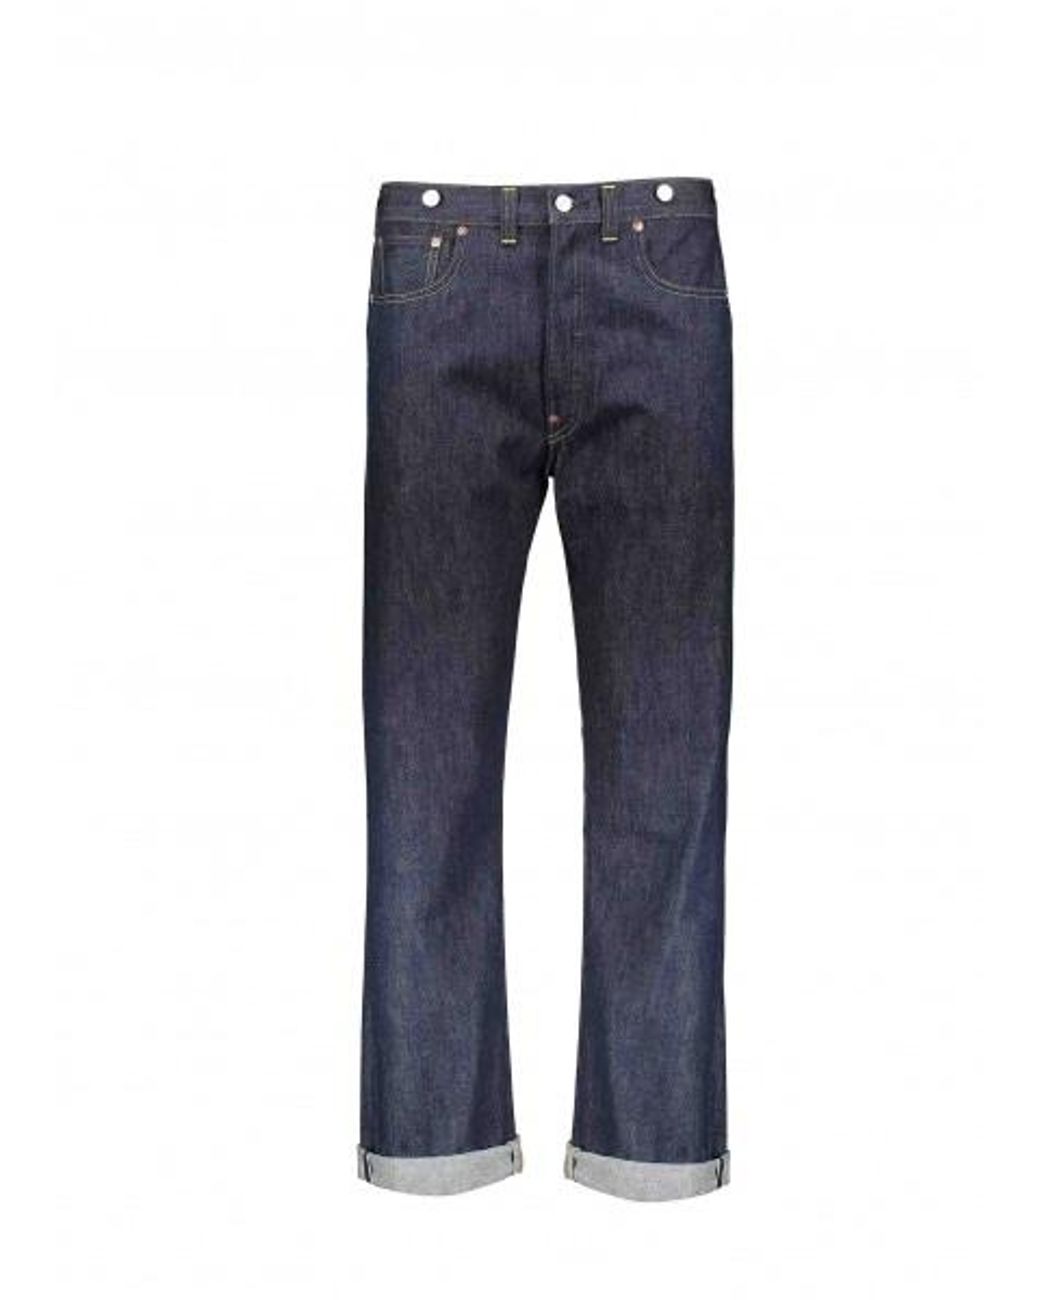 Levi's Men's Blue 1933 501 Jeans